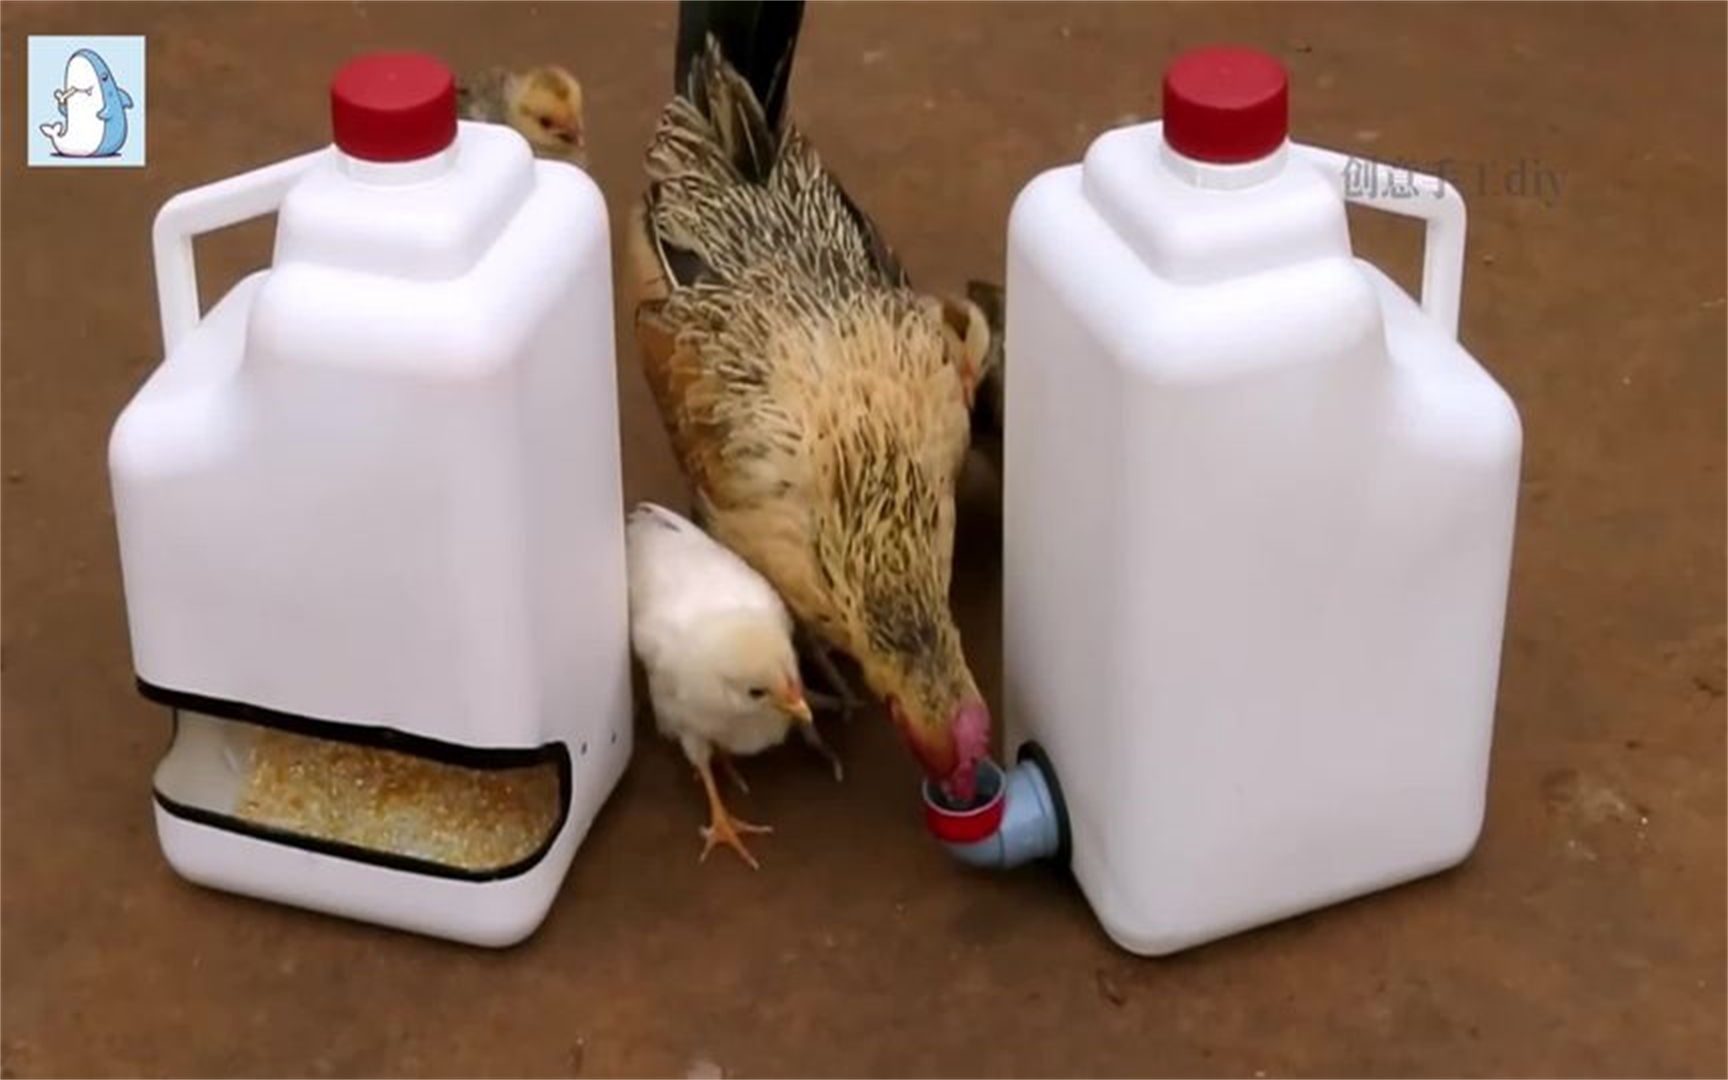 自制鸡吃食器图片